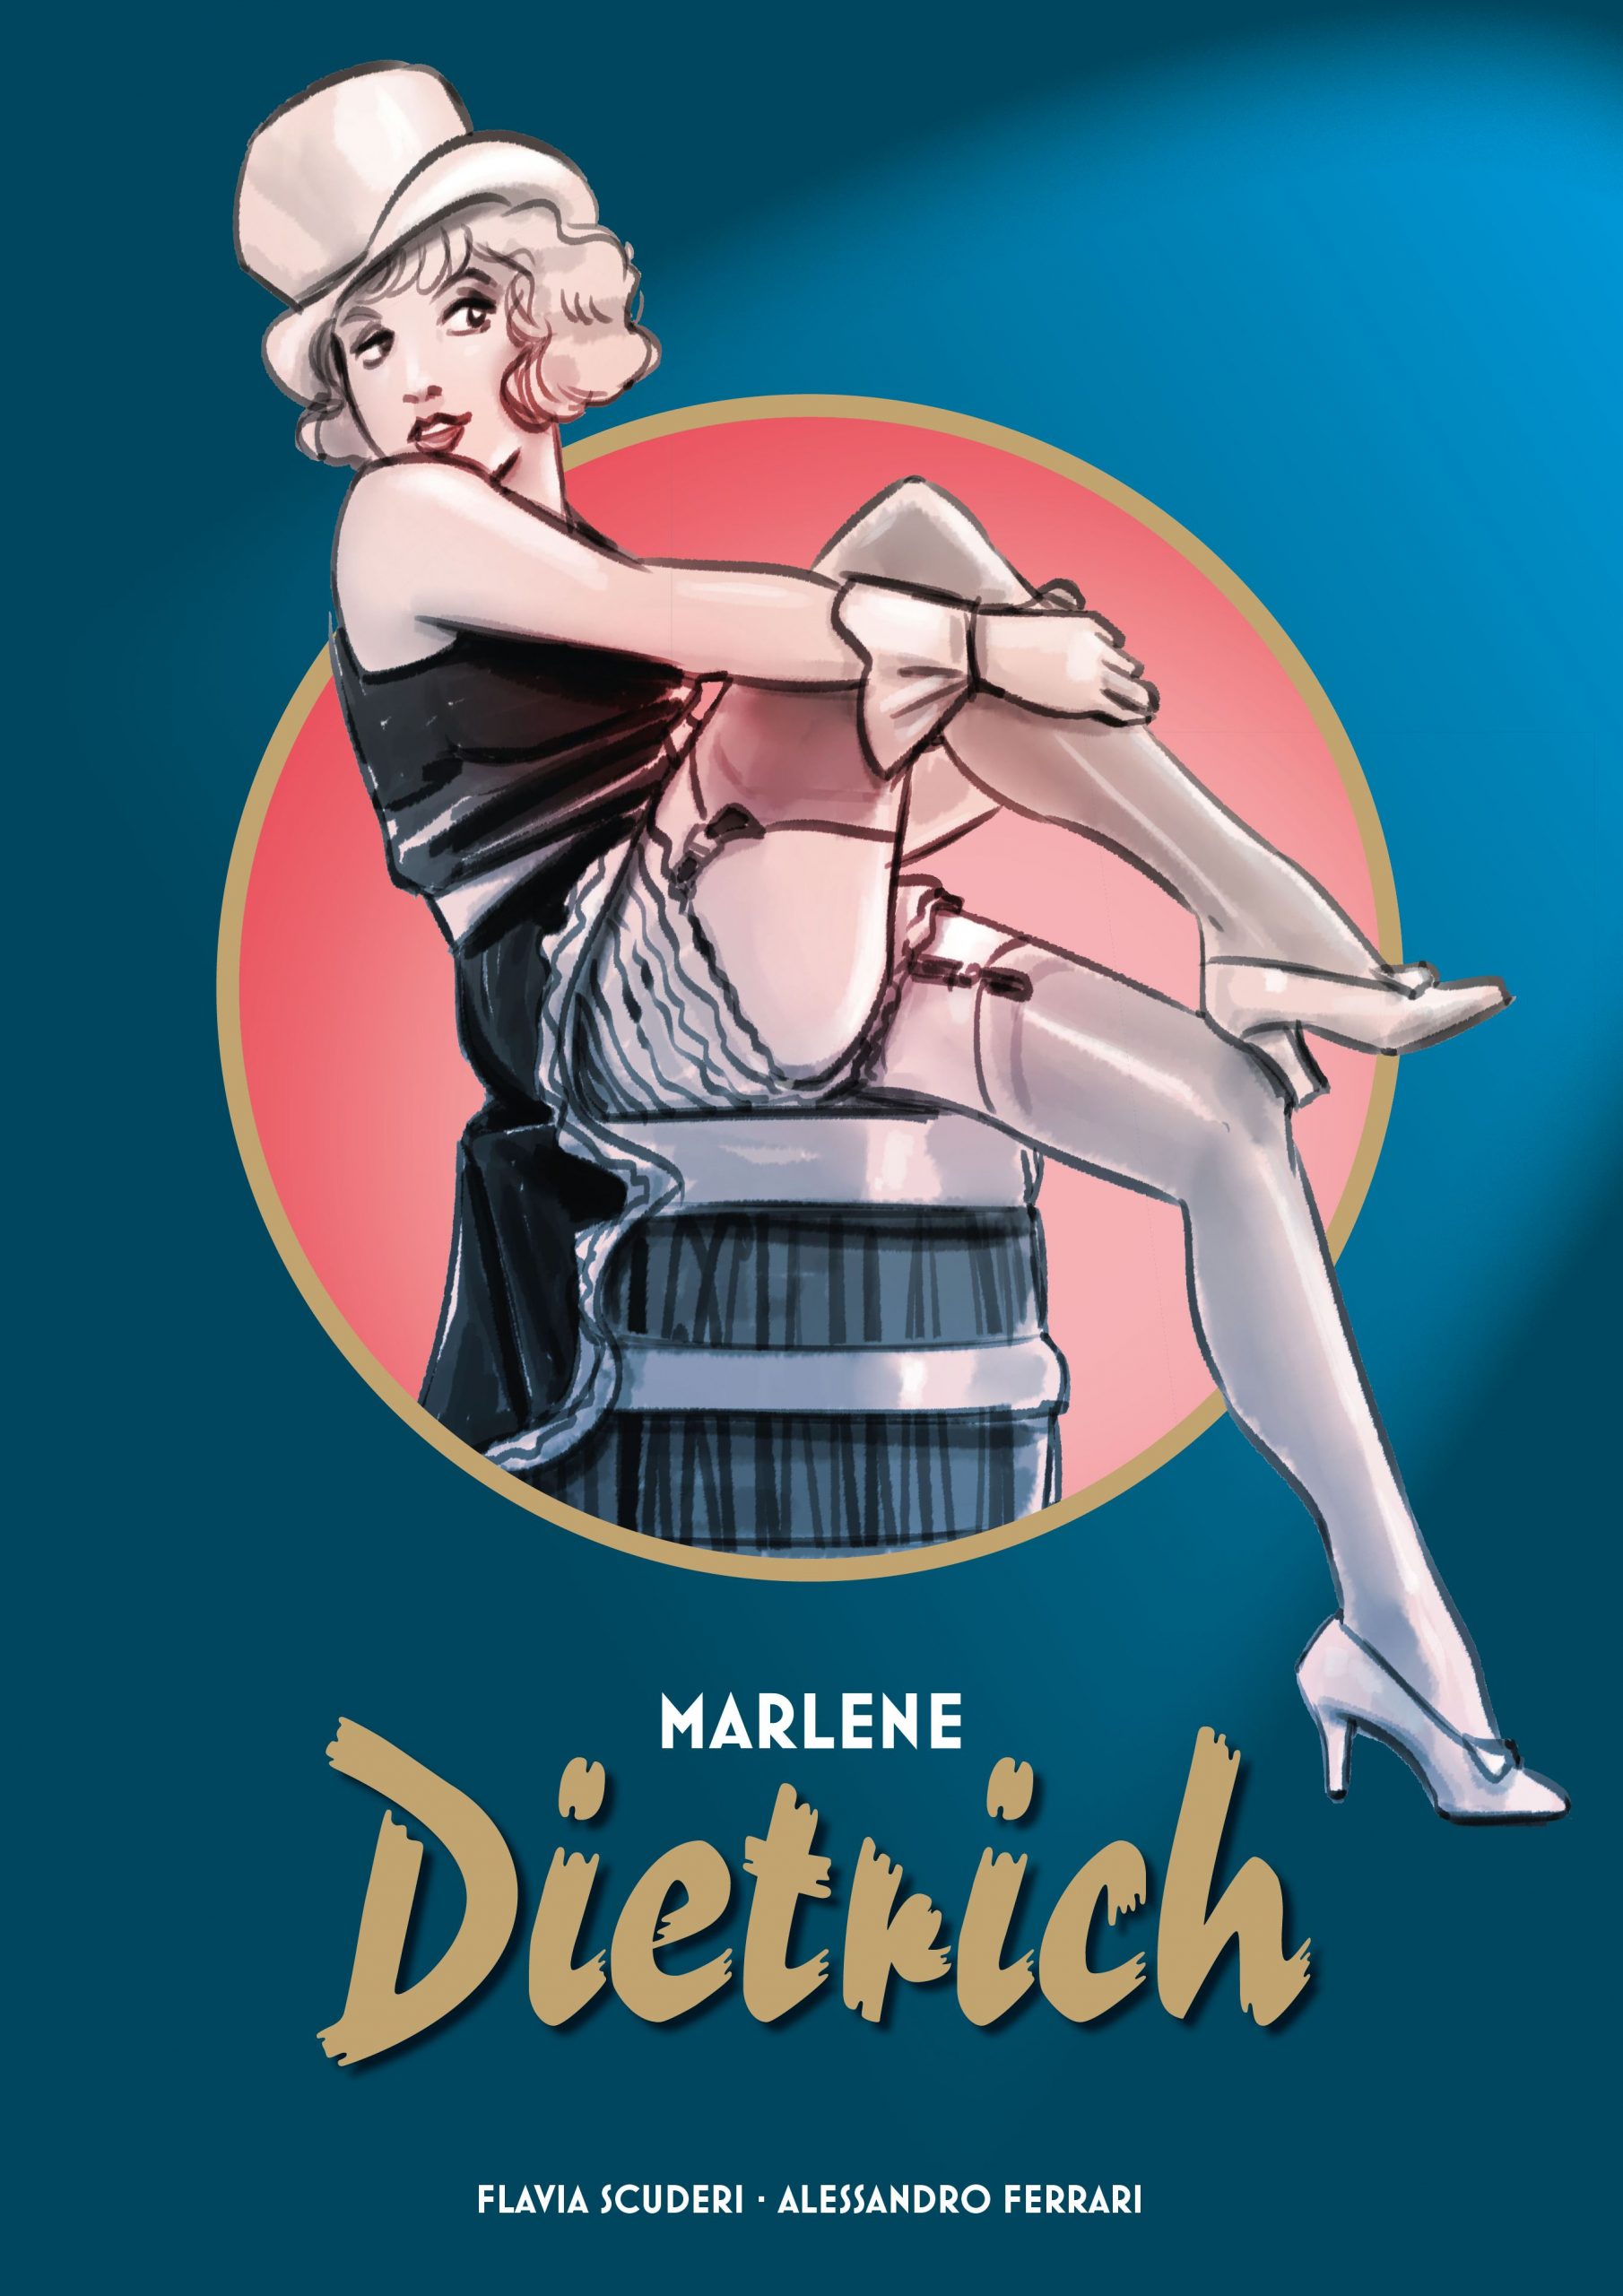 Teil 1 der Comic-Biografie, mit der Jugend und frühen Karriere der Dietrich ist jetzt erschienen